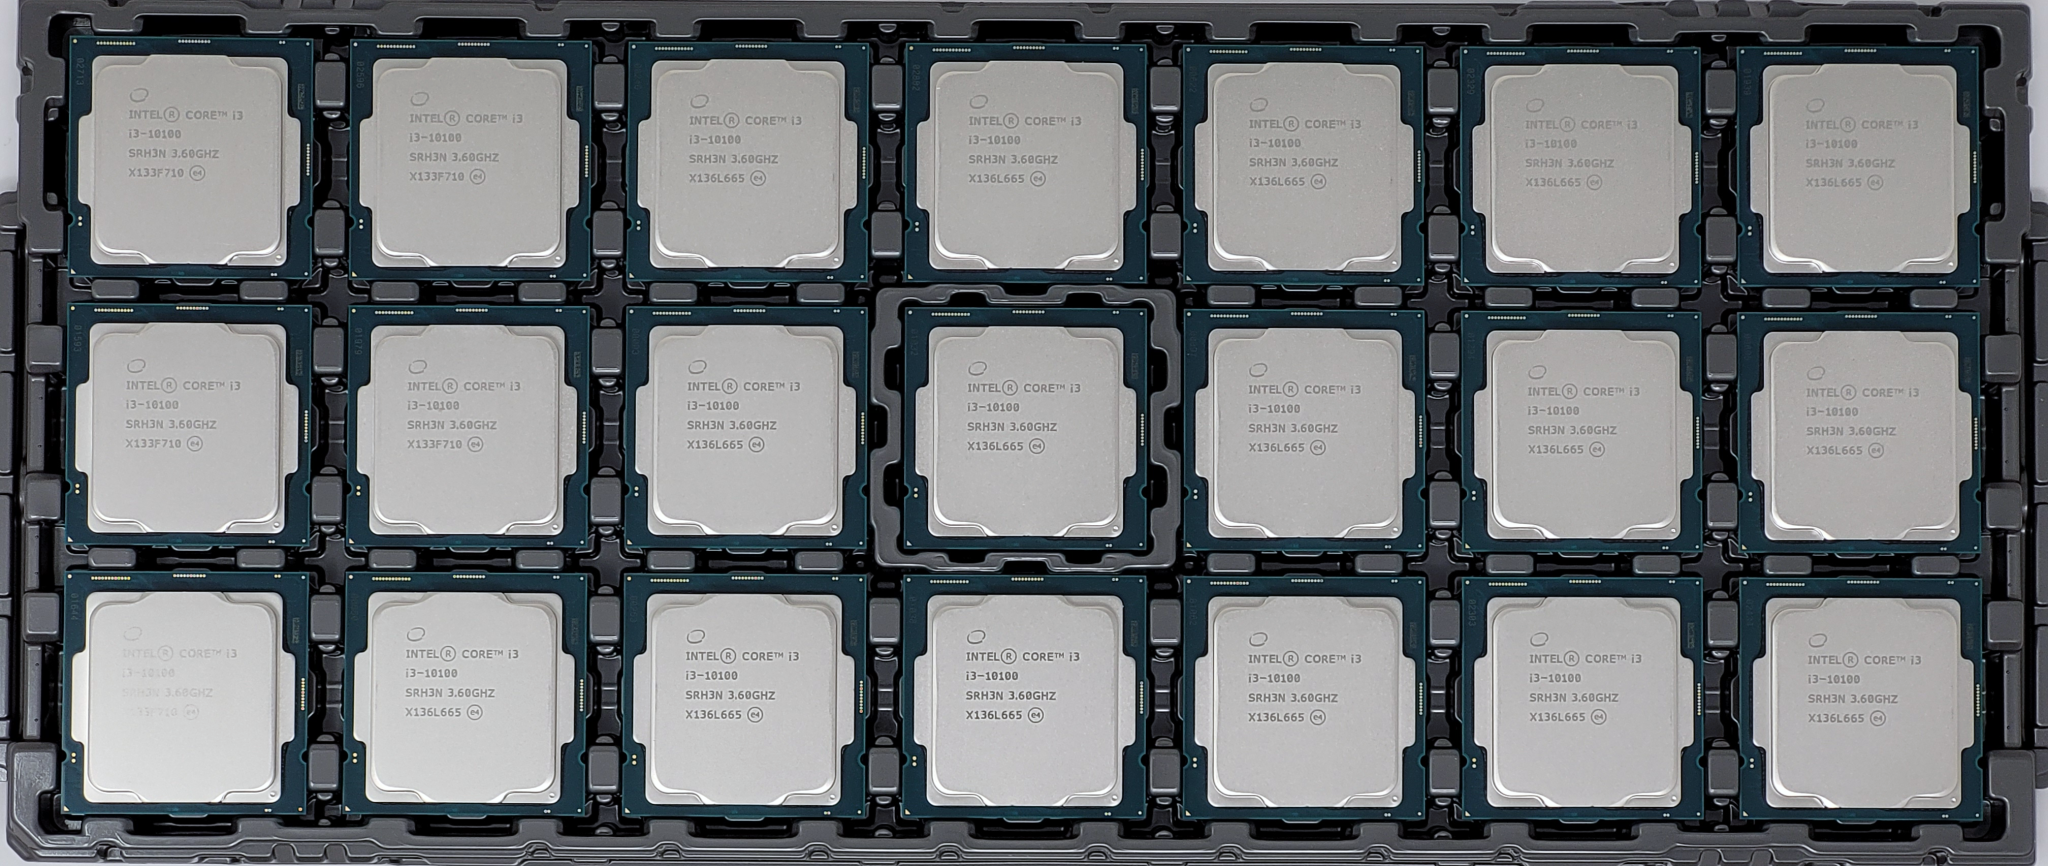  Intel Core i3-10100 Procesador de escritorio 4 núcleos hasta  4.3 GHz LGA1200 (chipset Intel serie 400) 65W, número de modelo:  BX8070110100 : Todo lo demás